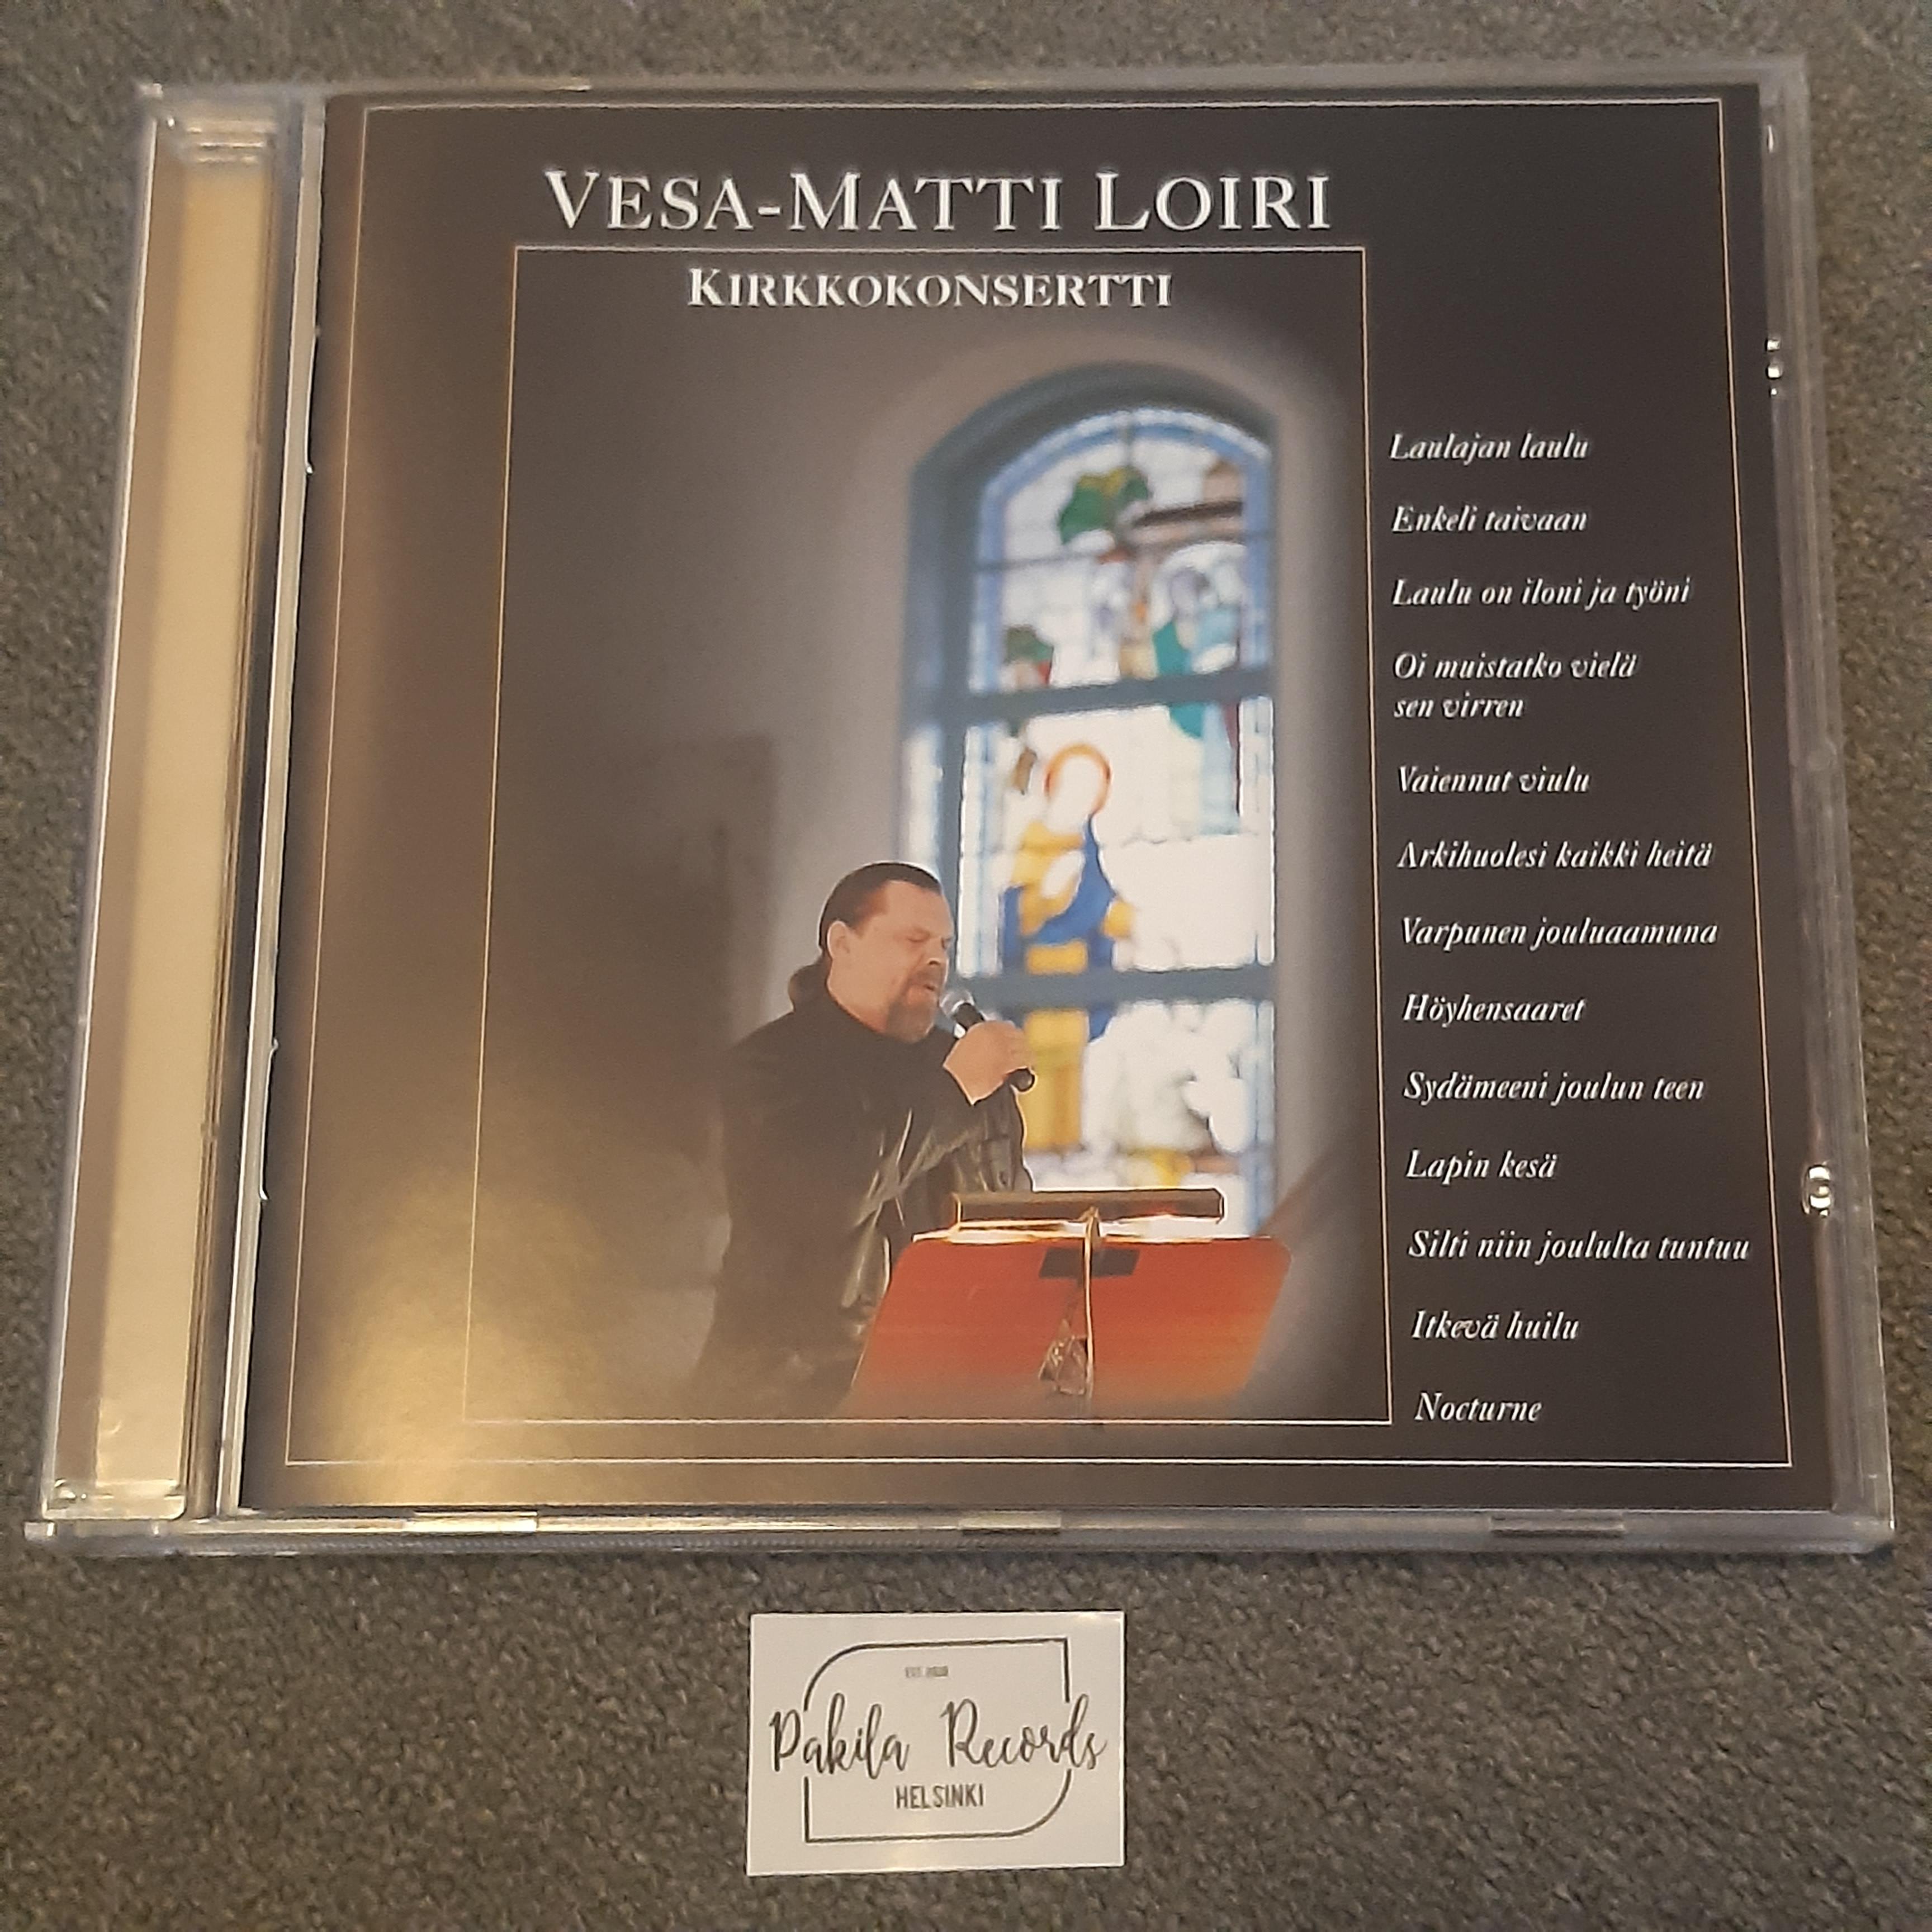 Vesa-Matti Loiri - Kirkkokonsertti - CD (käytetty)